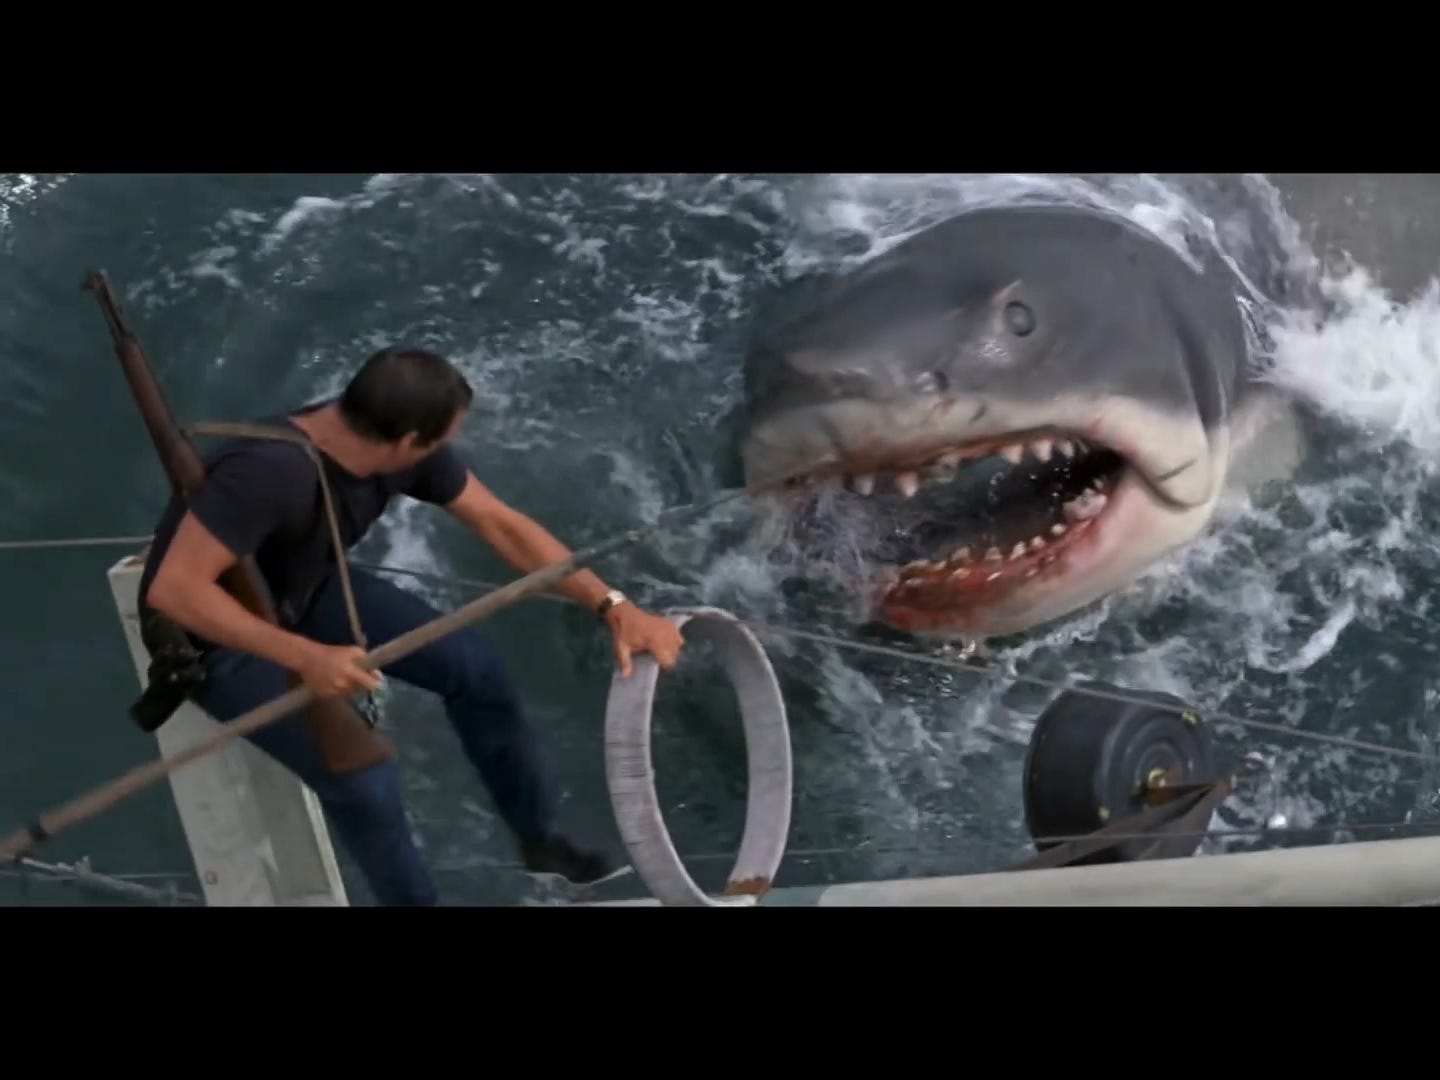 Der Protagonist des Films steht mit einem Speer über dem animatronischen Hai.